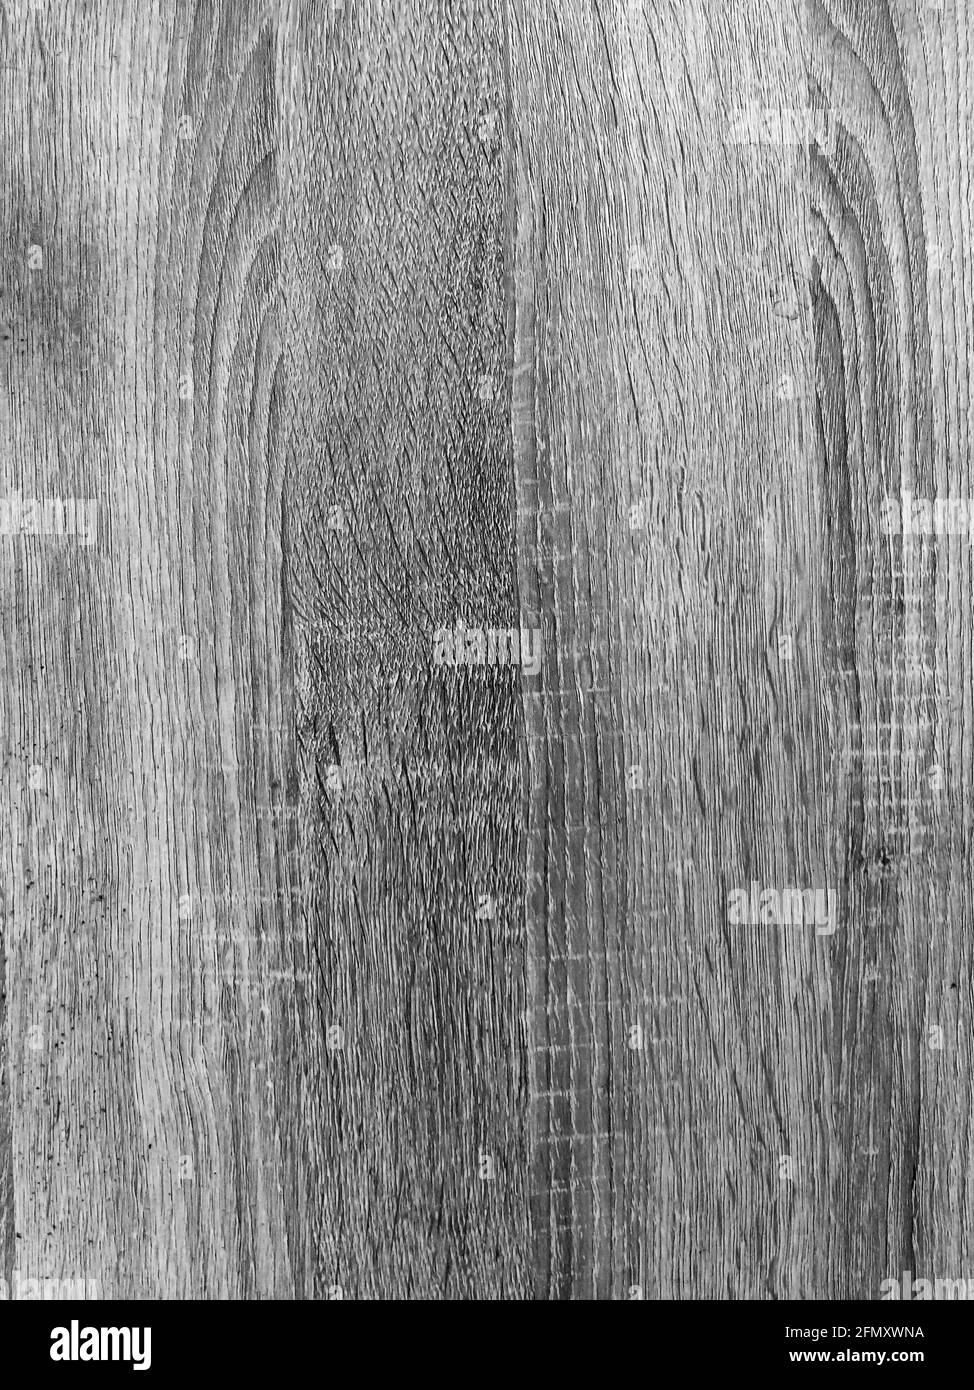 Leere Holzstruktur für kreativen Hintergrund. Schwarz und Weiß. Flach liegend. Draufsicht. Nahaufnahme. Weicher Fokus auf Holztextur. Stockfoto